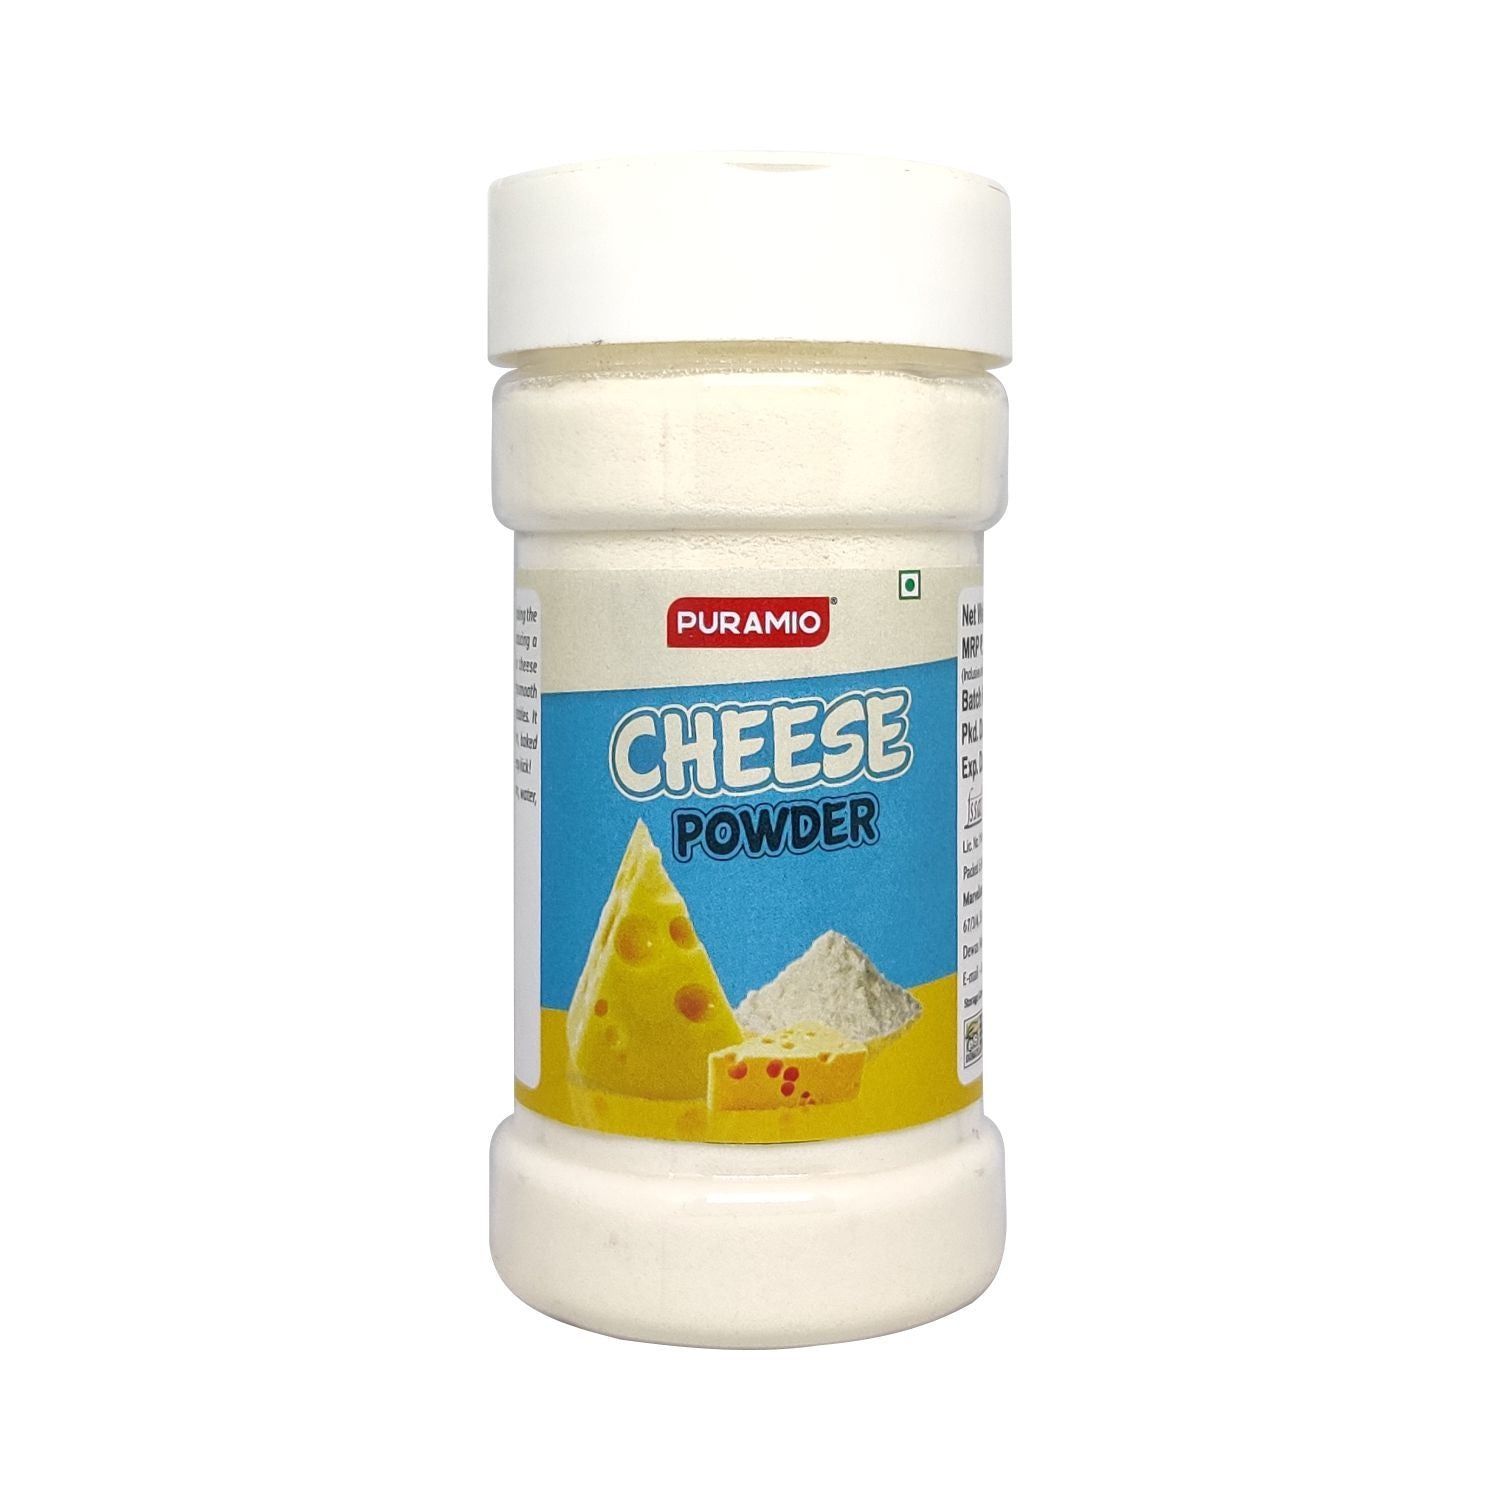 Puramio Cheese Powder, 100 gm